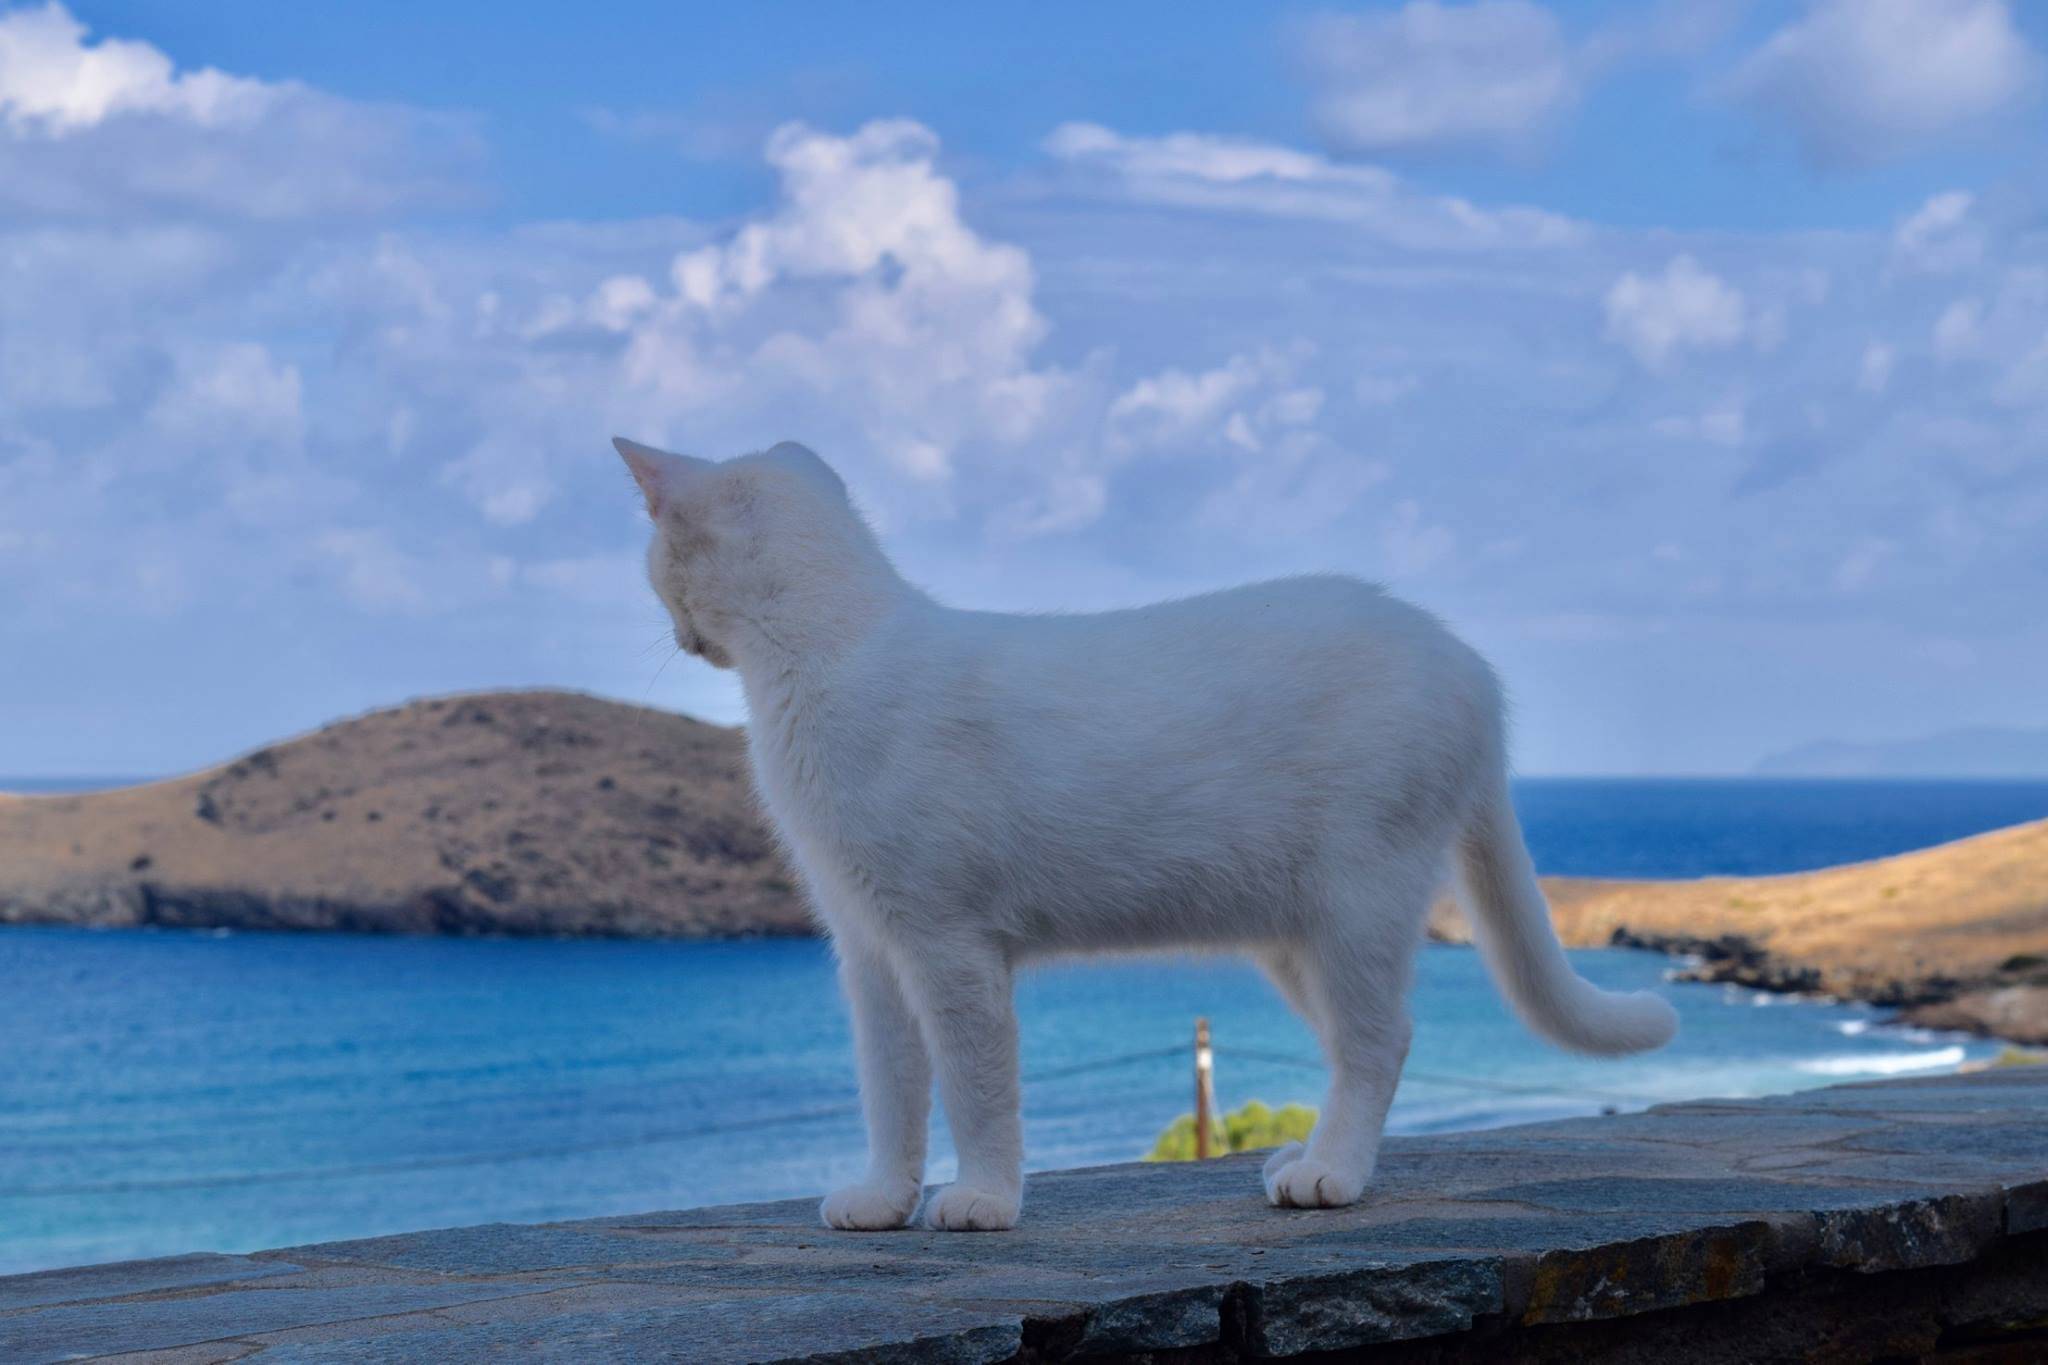 Работа мечты - уход за кошками на греческом острове